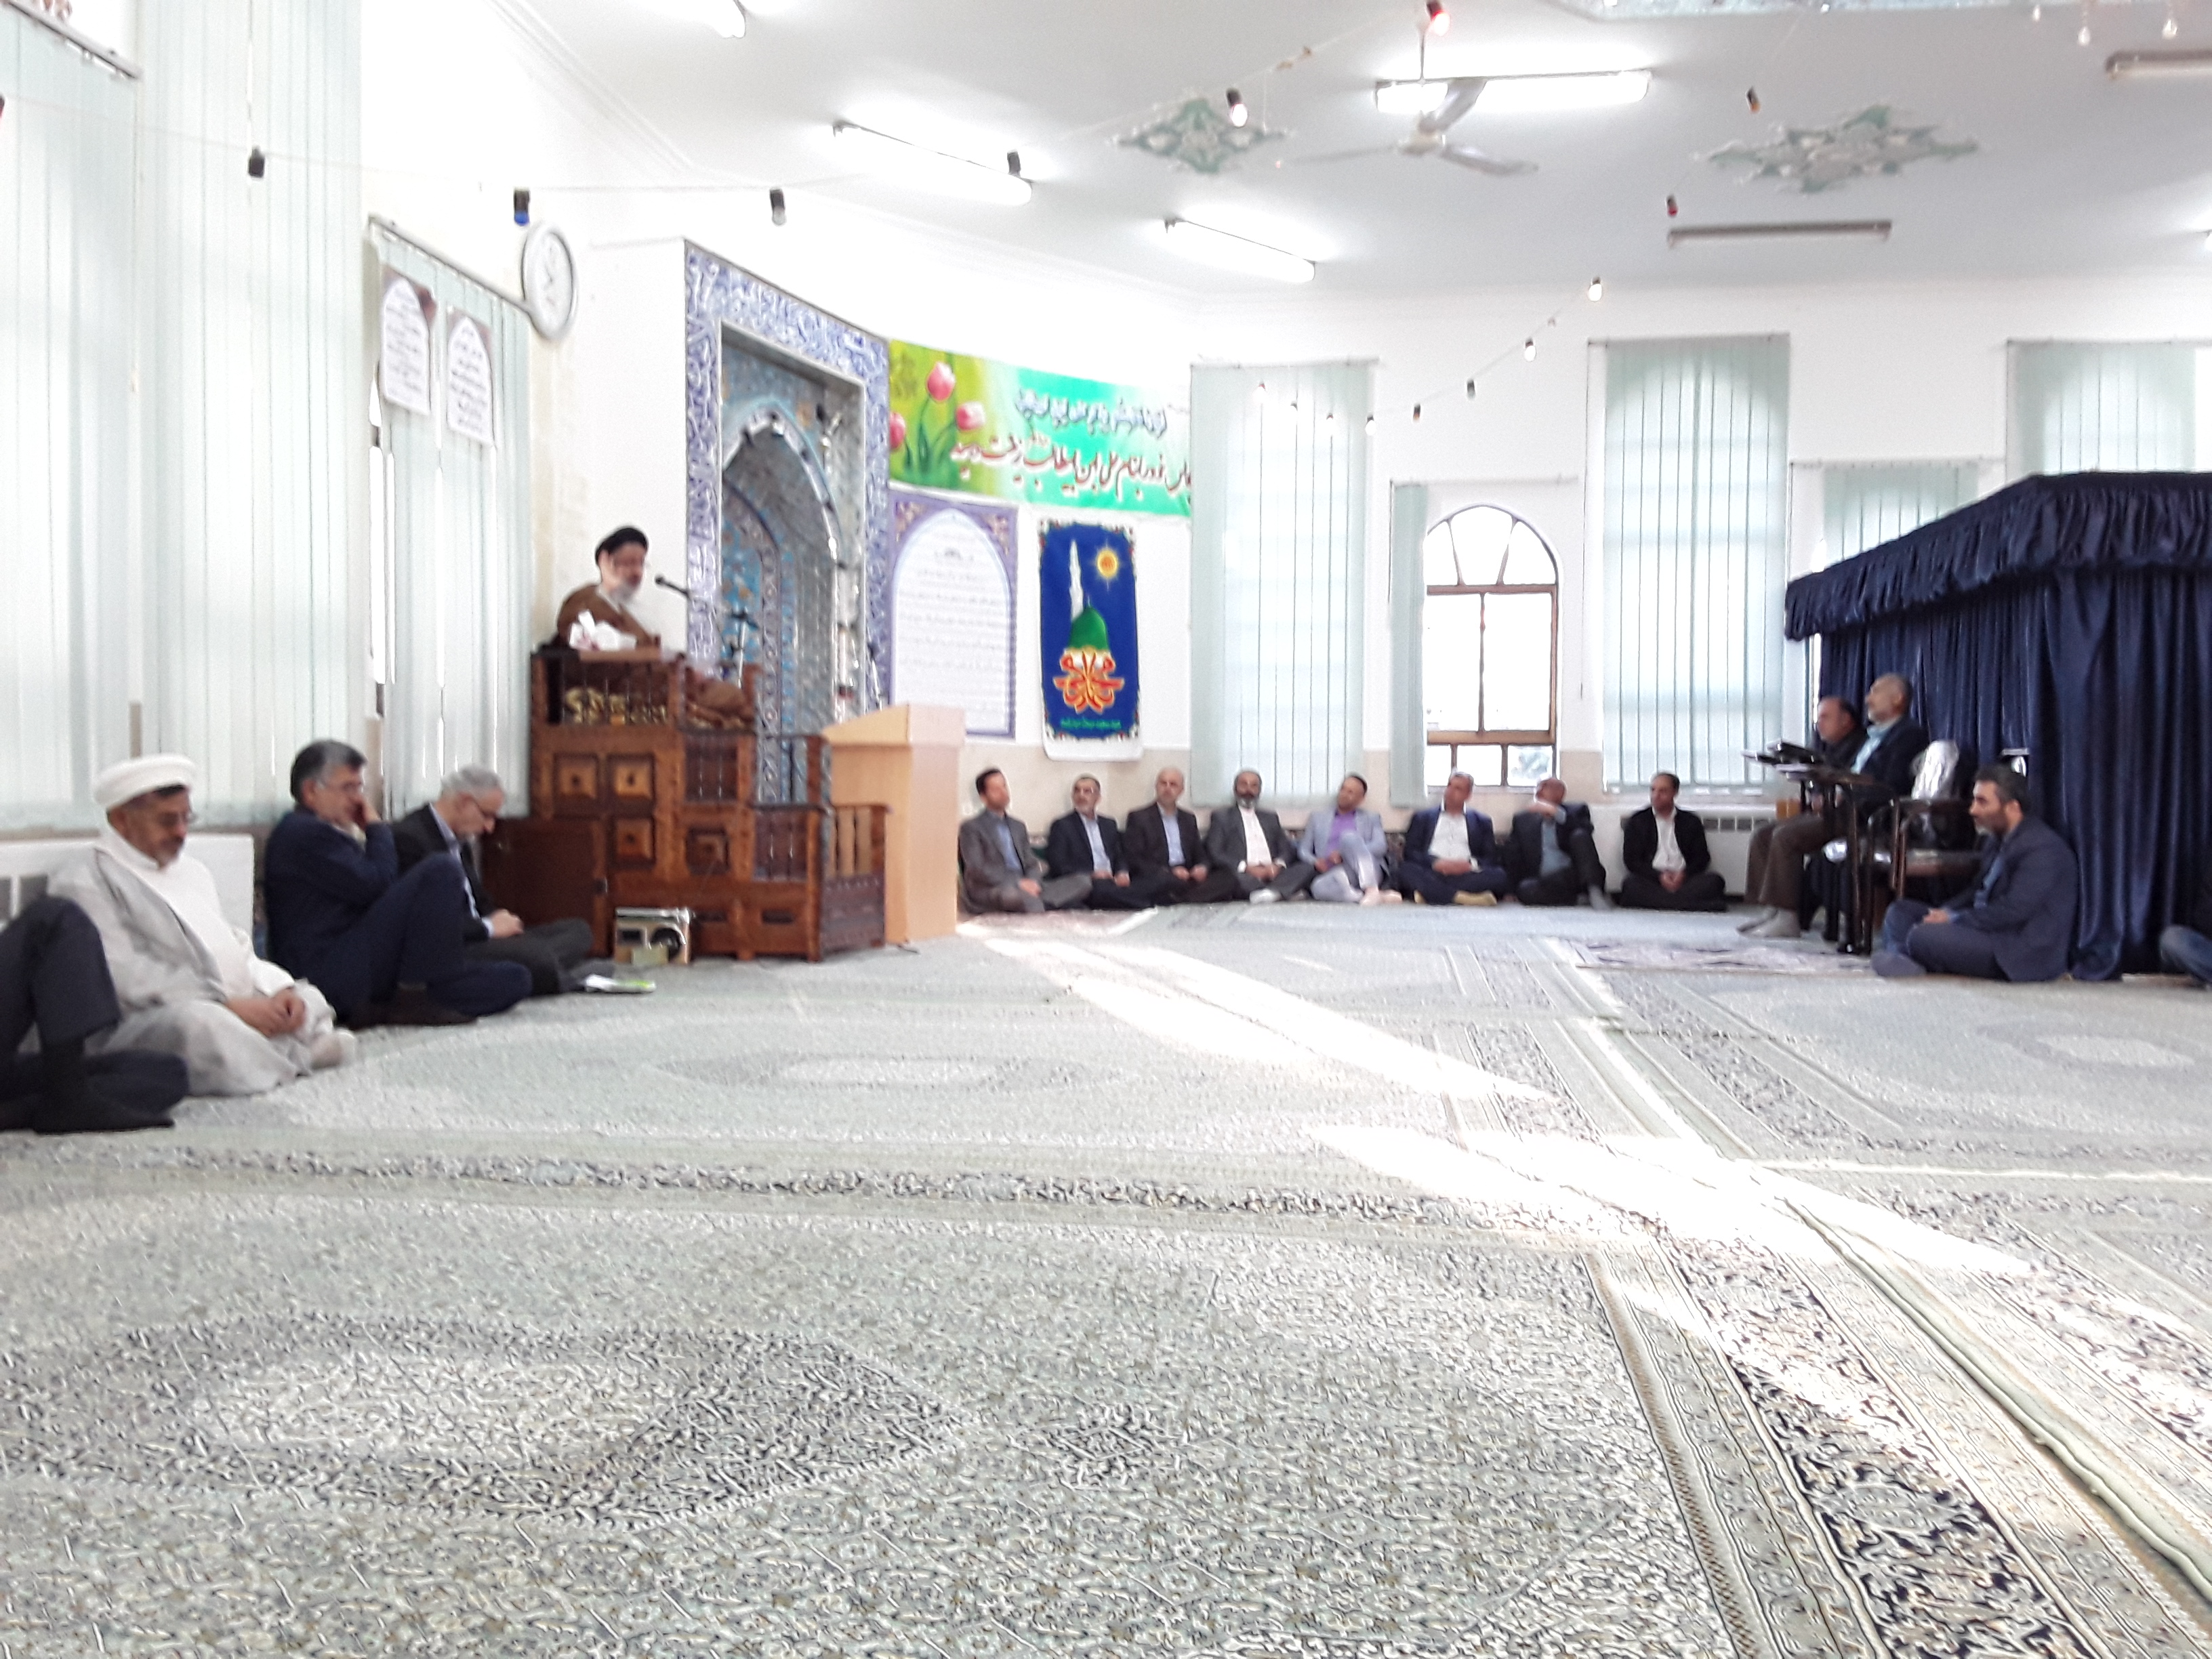  برگزاری جشن بعثت پیامبر(ص) دراداره کل شیلات مازندران